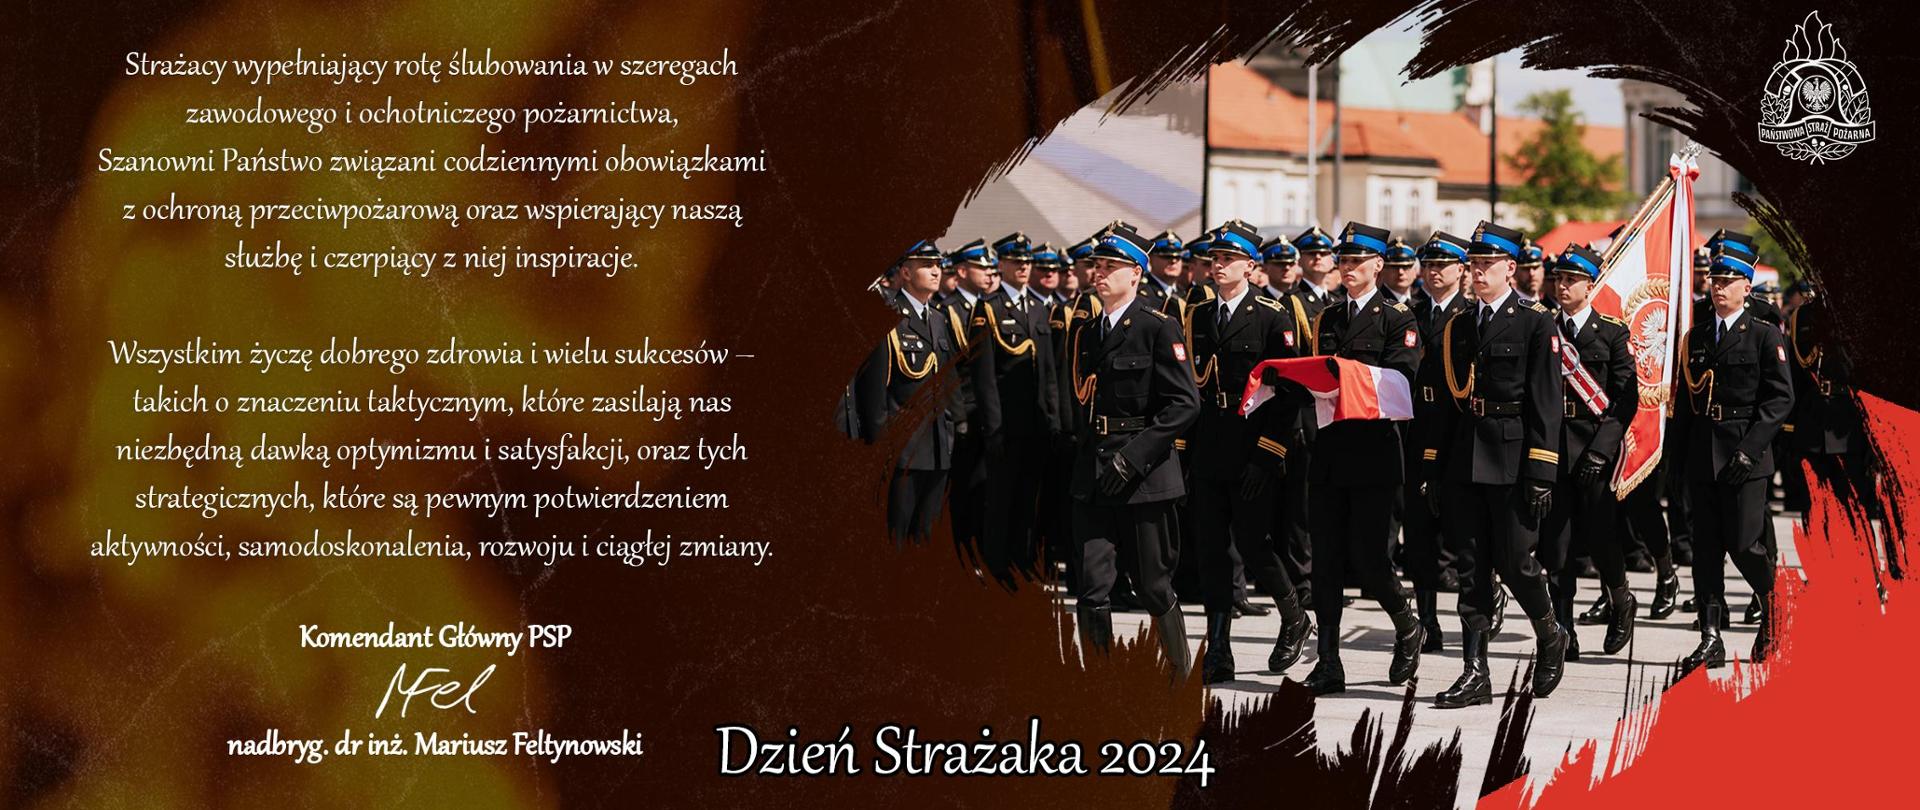 Życzenia Komendanta Głównego PSP z okazji Dnia Strażaka 2014 r.